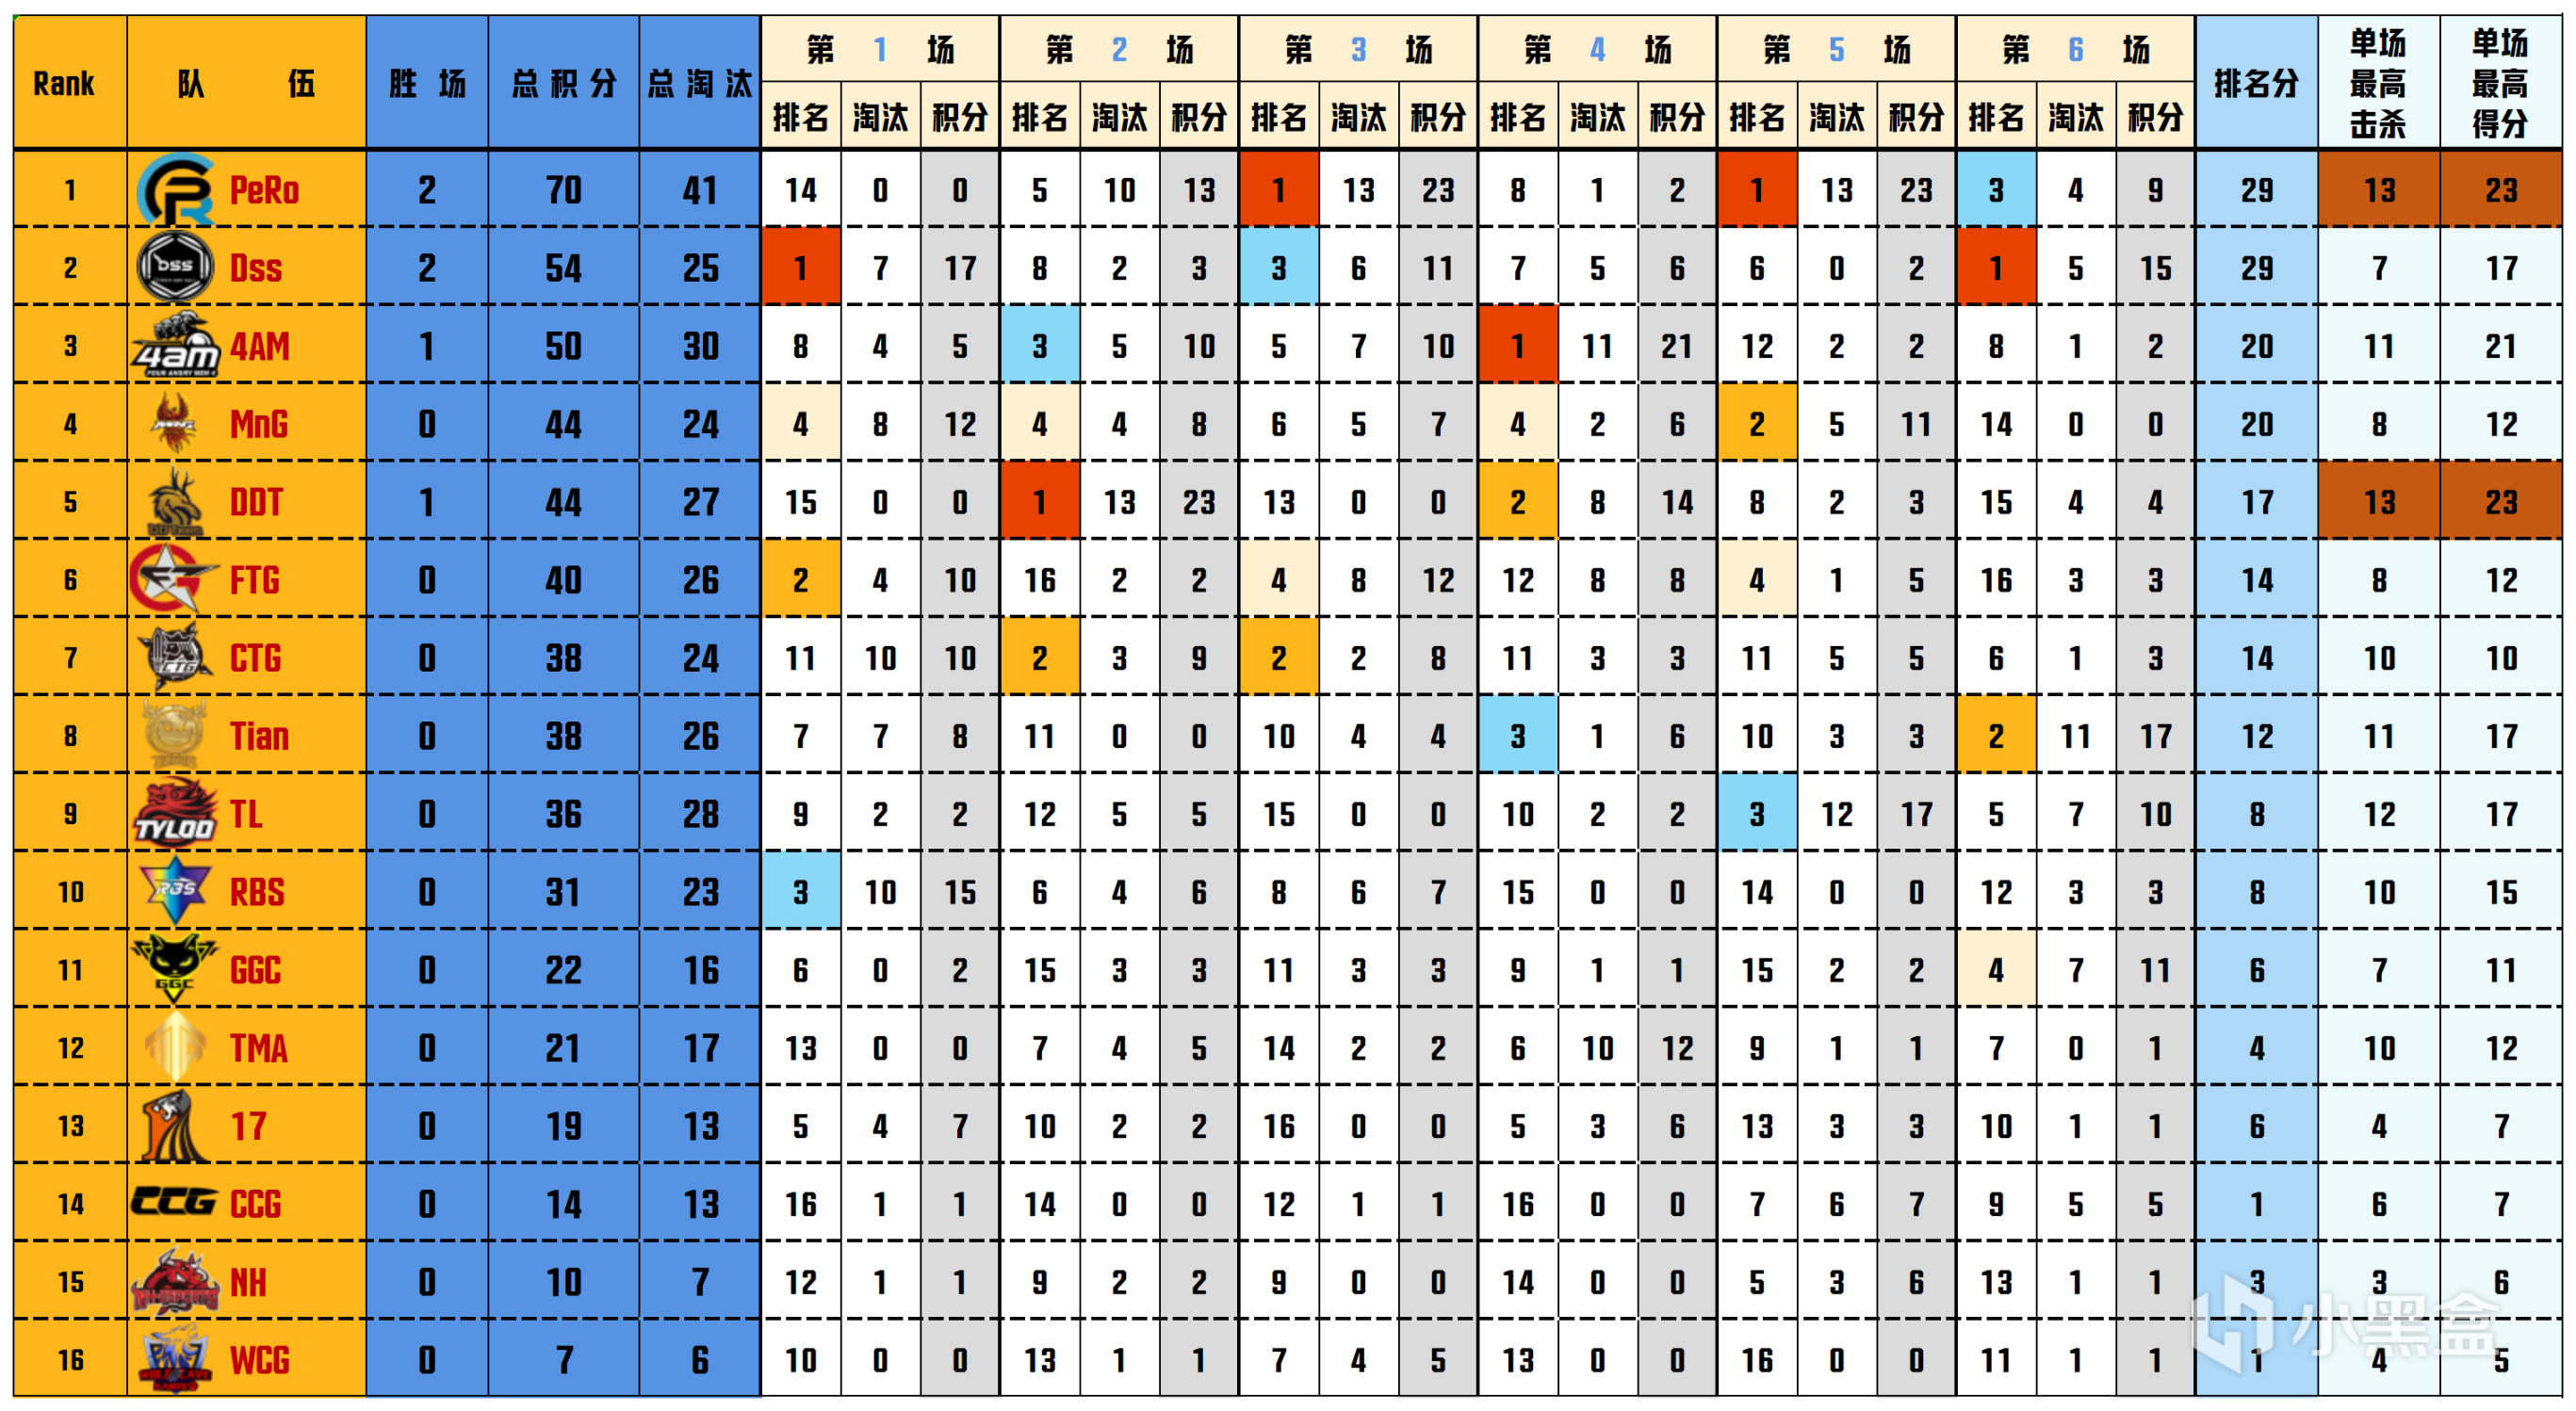 【数据流】PGS2预-决赛D1,PeRo 70分单日第一,Aixleft战神19淘汰-第1张